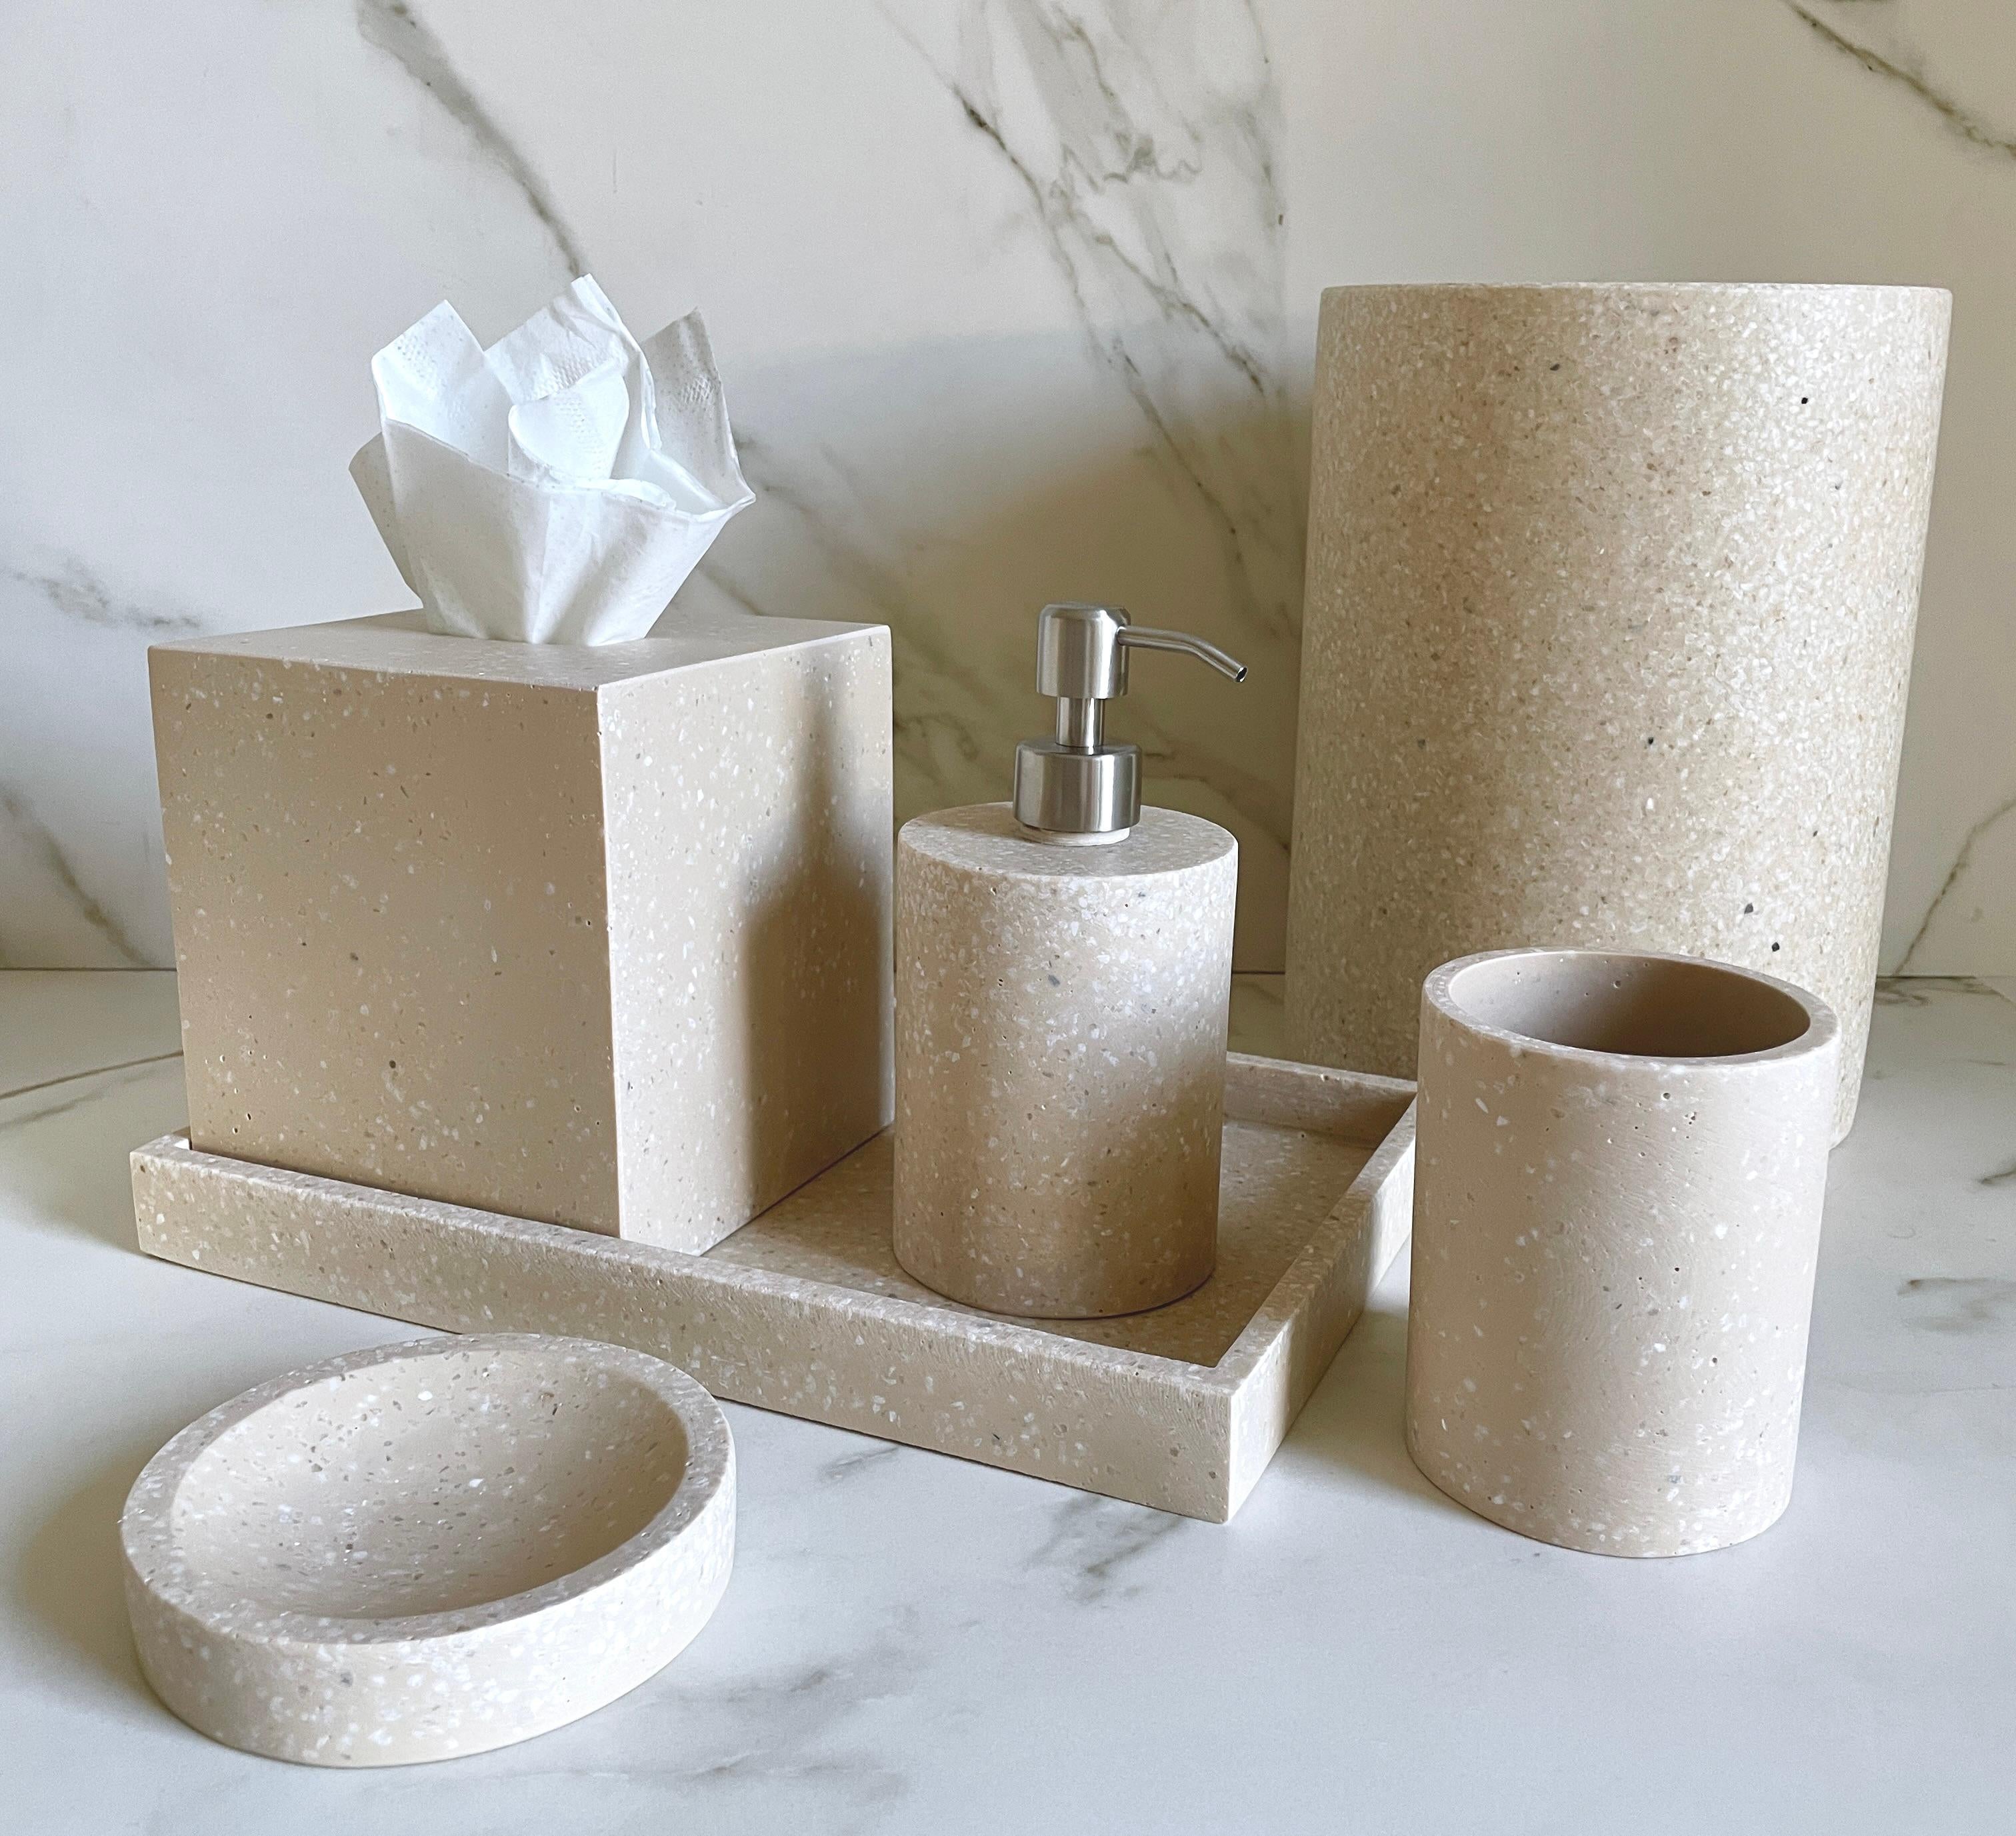 Terrazzo-Badezimmer-Set, handgefertigt aus Harz und Marmor. Dieser einzigartige Materialmix schafft trendige Stücke, die Ihr Bad optisch aufwerten, und das minimalistische Design bringt einen modernen Touch in jeden Raum. Dieses Set enthält alles,